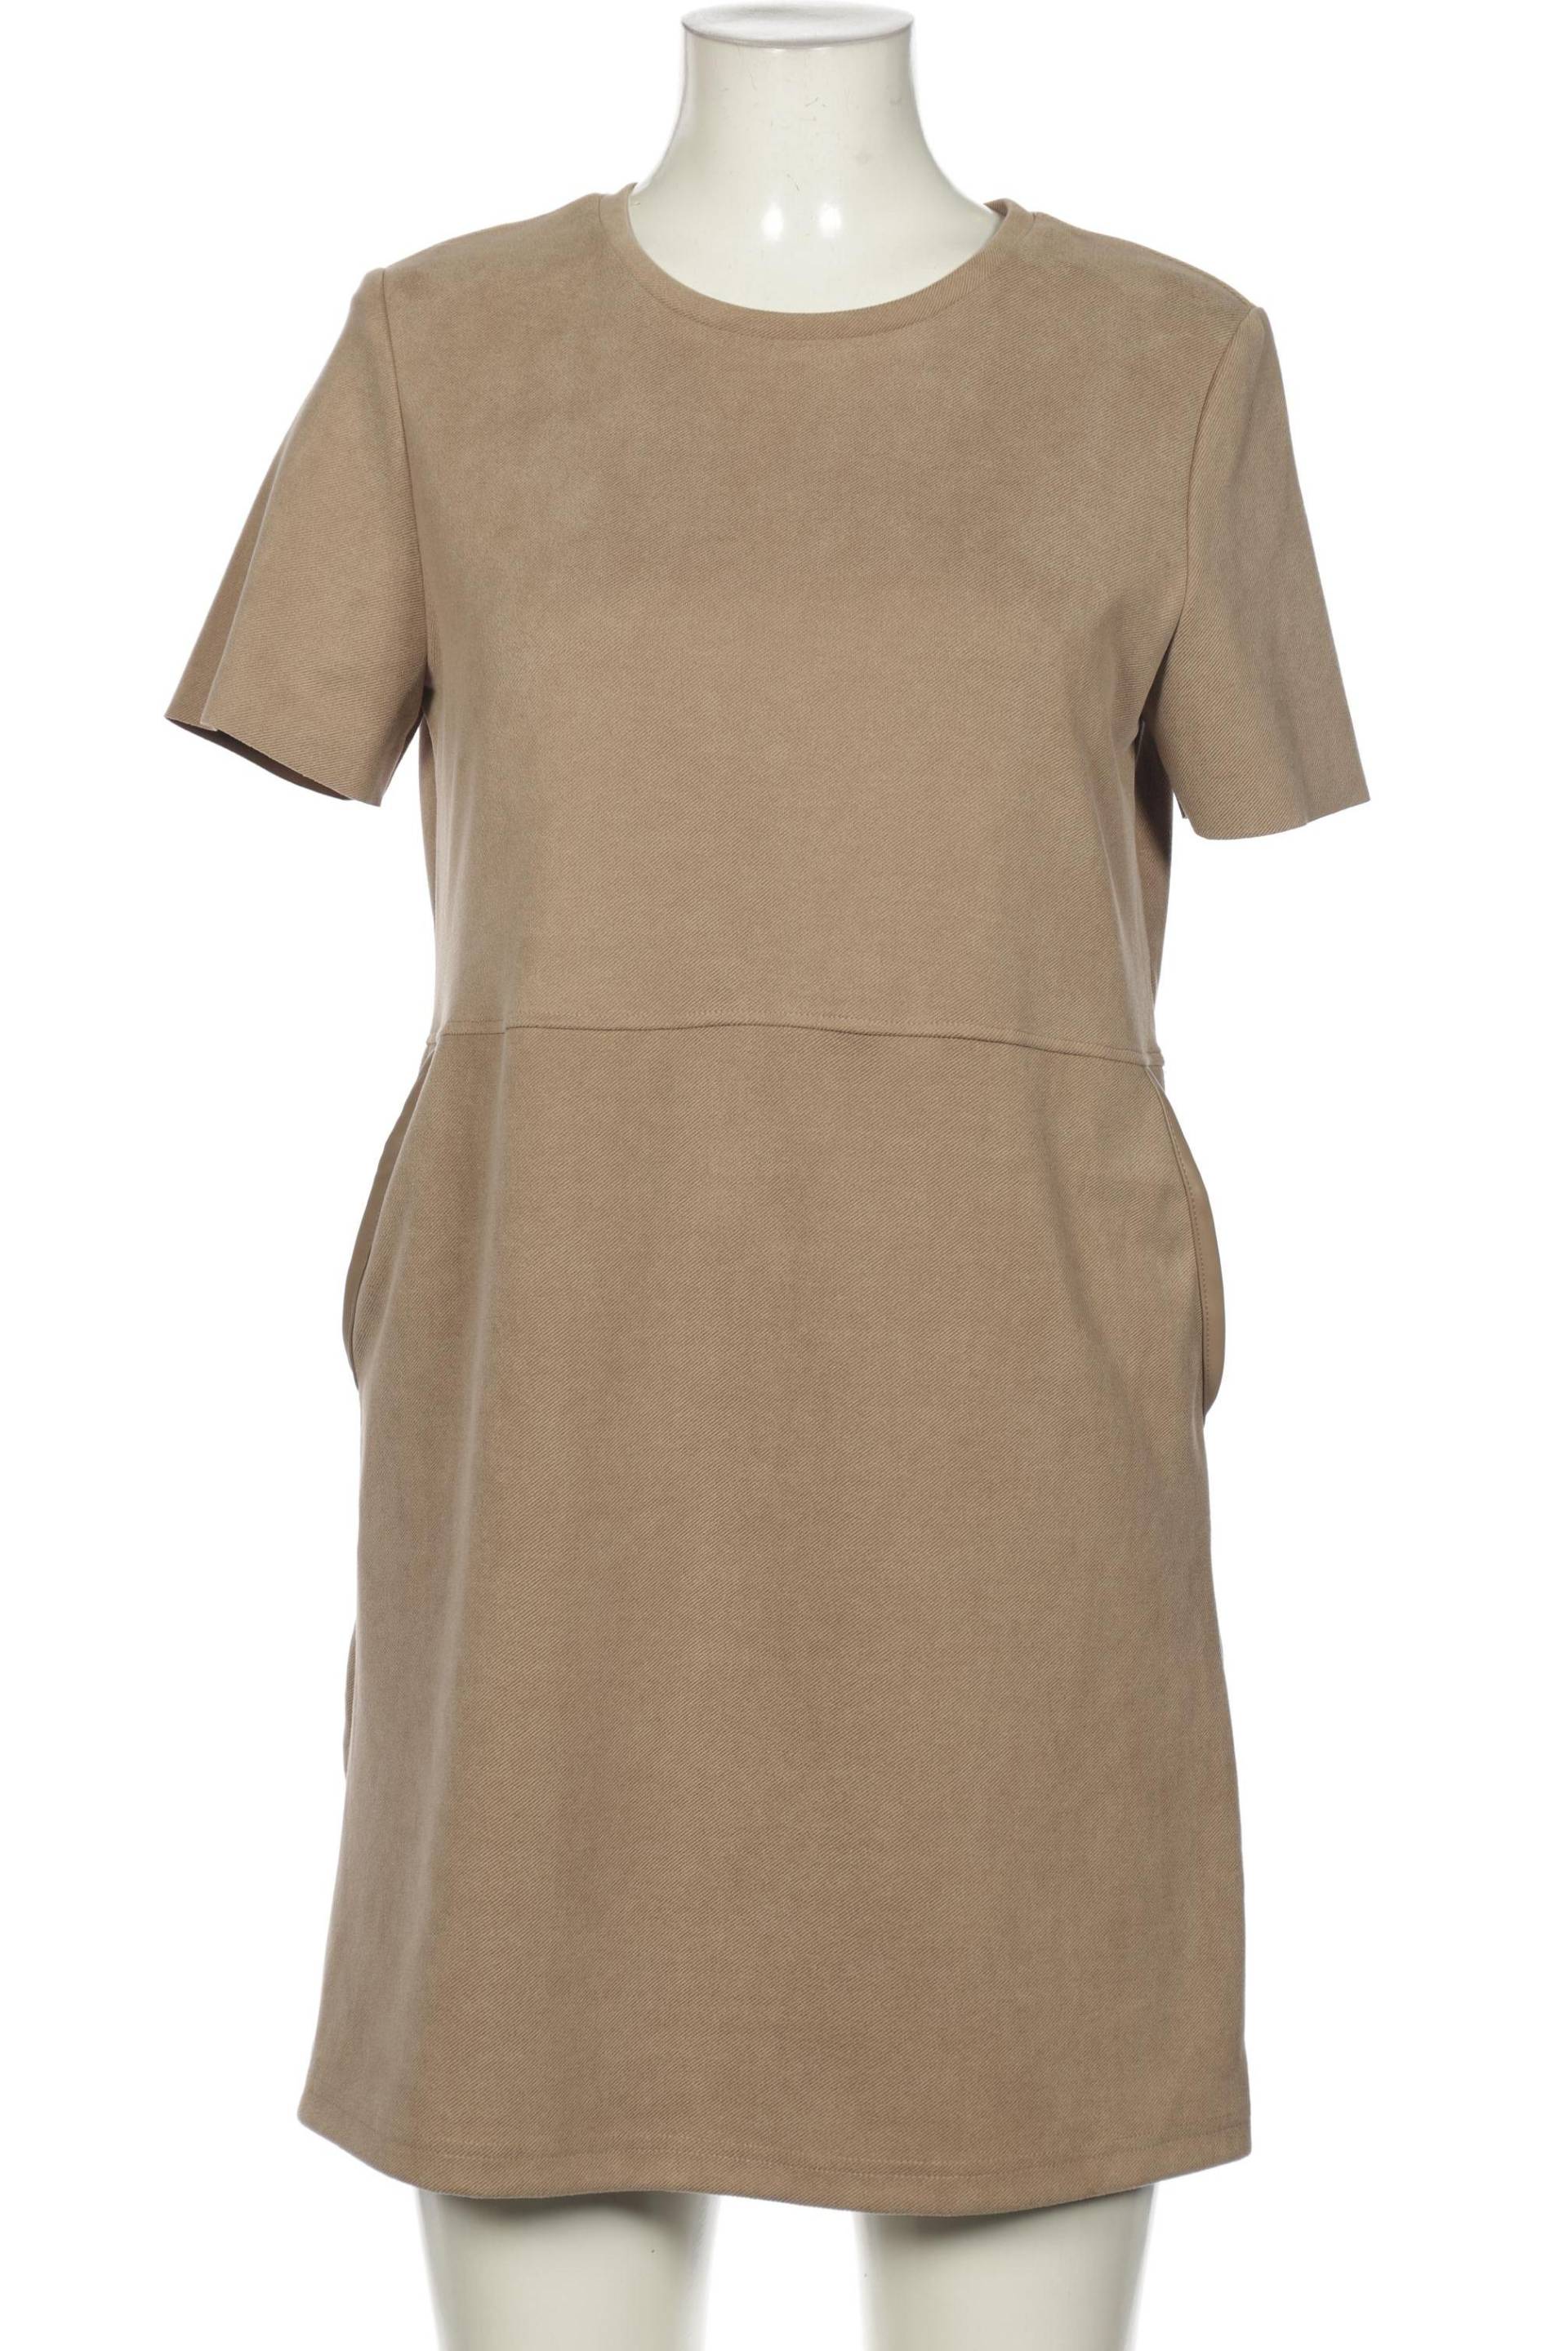 Zara Damen Kleid, braun, Gr. 38 von ZARA